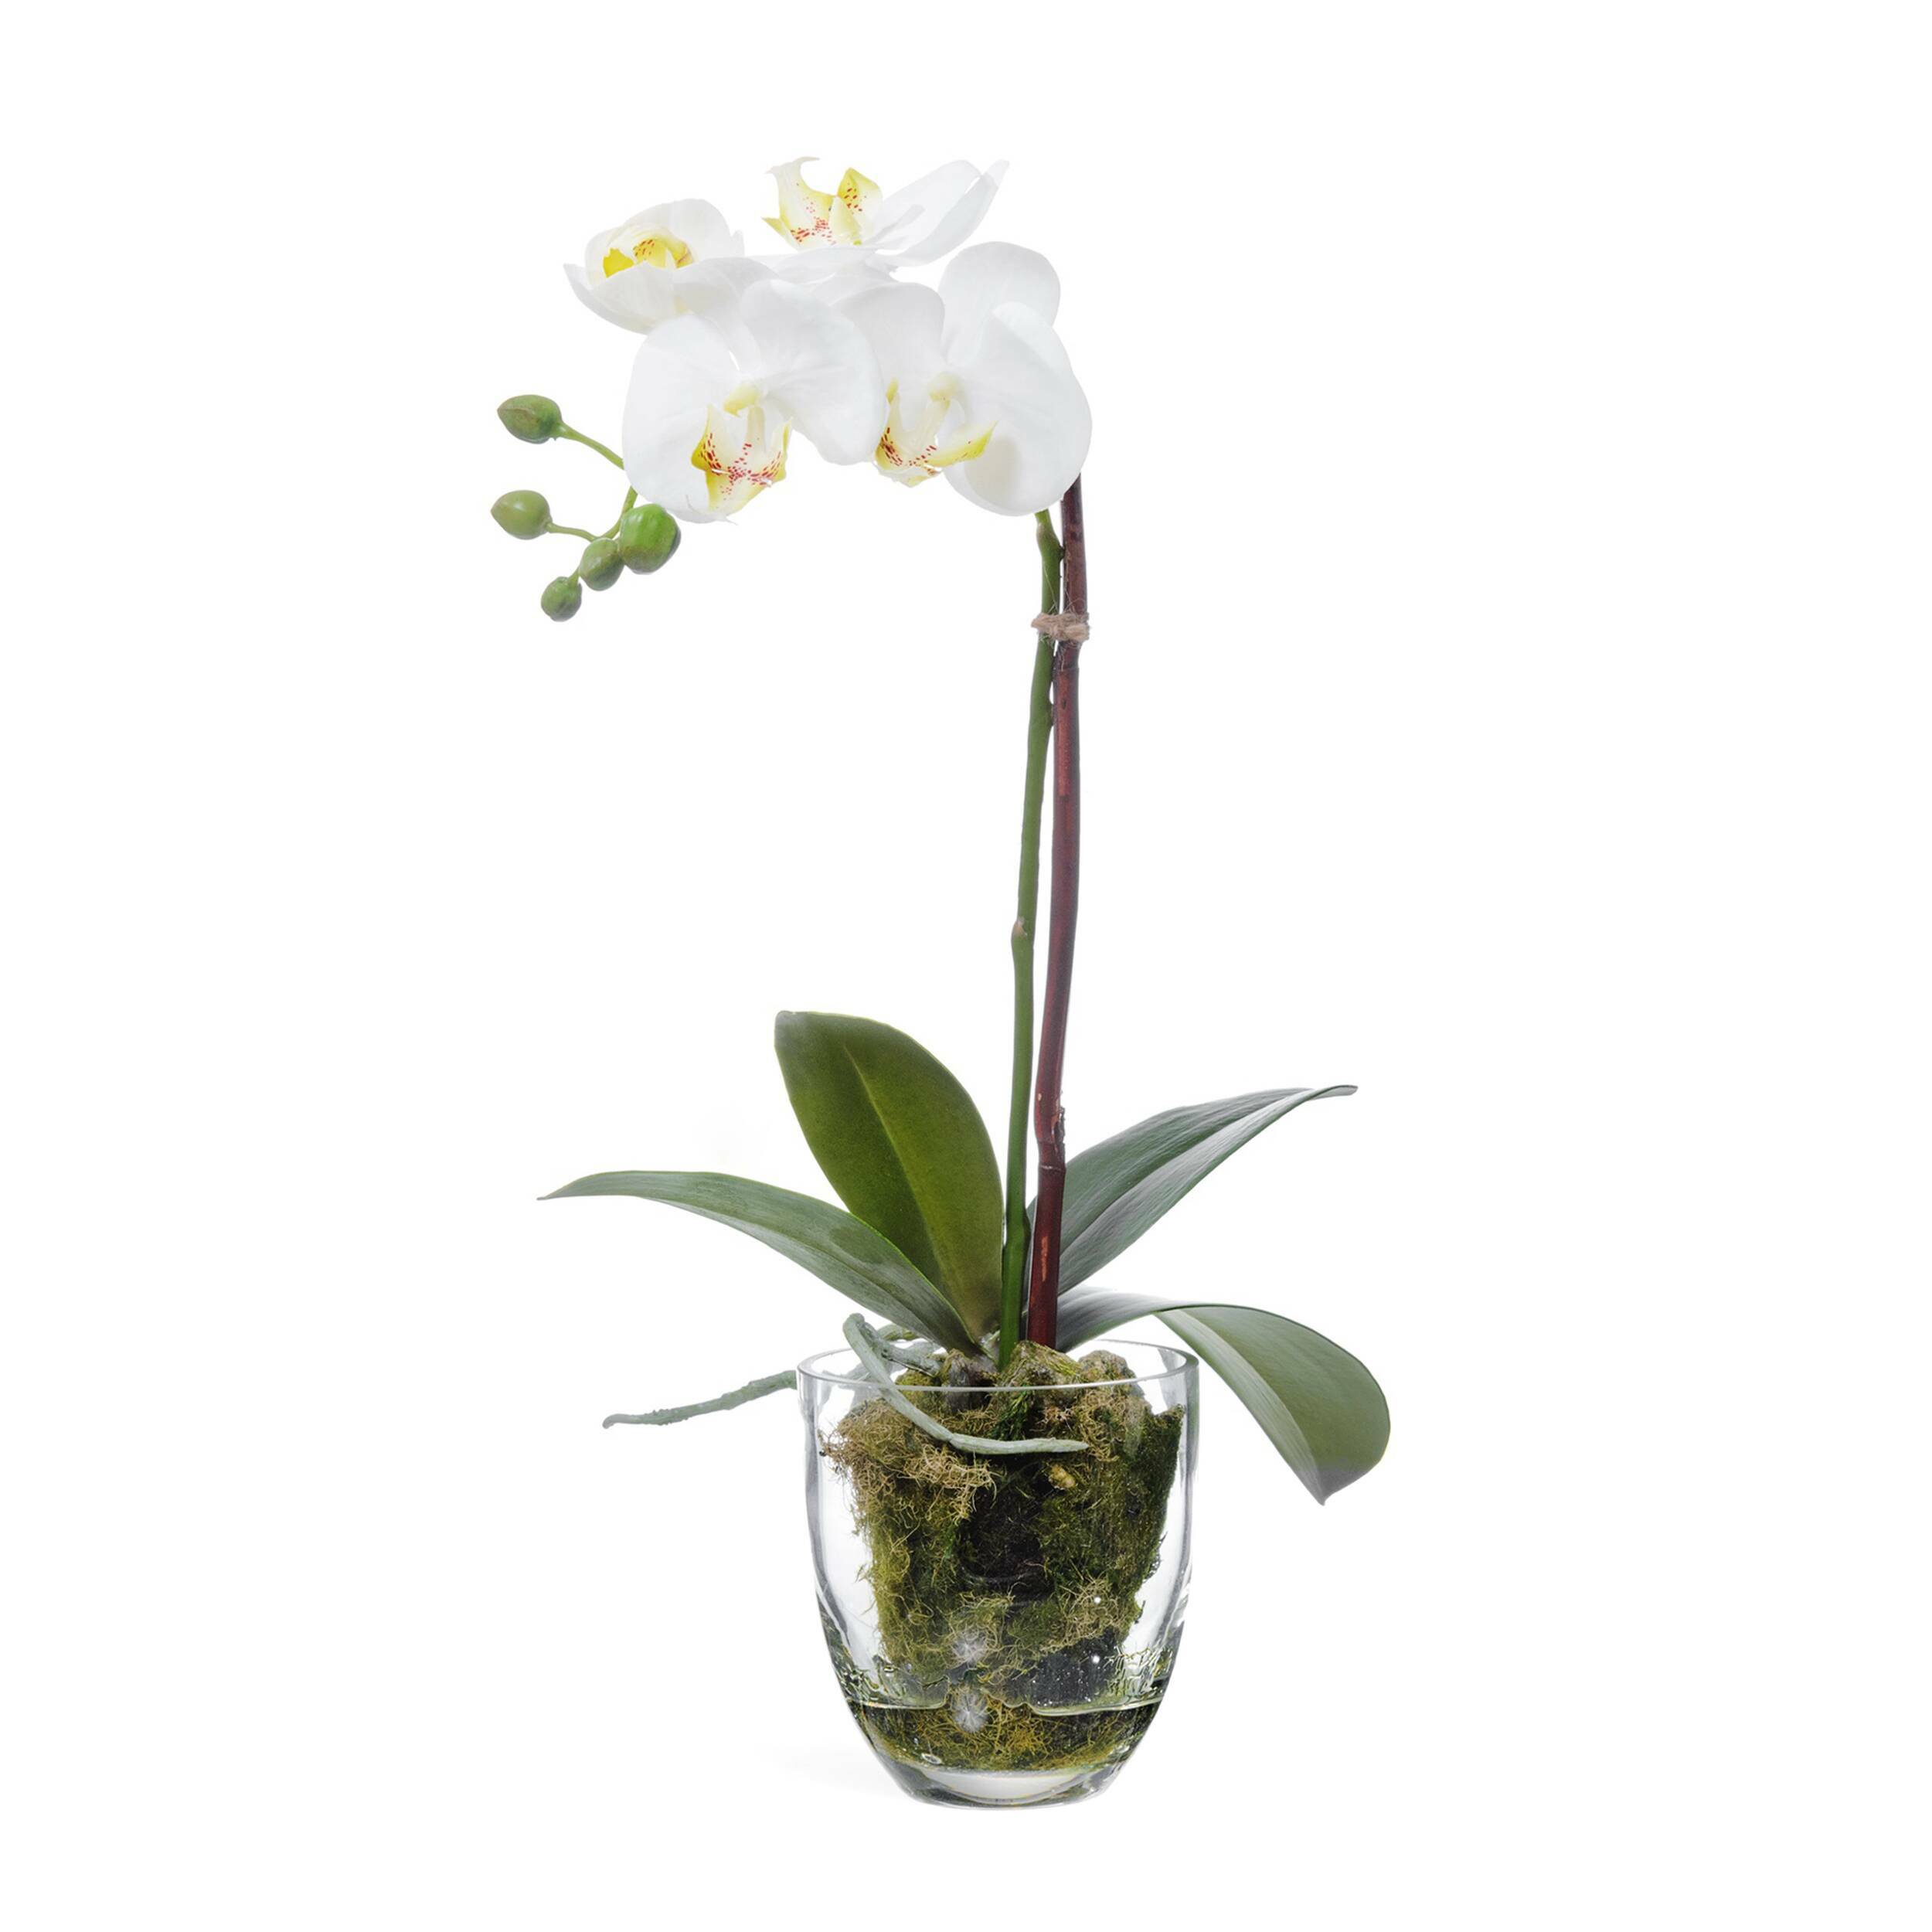 Орхидея в горшке купить в интернет. Орхидея фаленопсис белая искусственная. Фаленопсис белый в горшке. Орхидея фаленопсис белая в горшке. Орхидея фаленопсис белая с мхом, корнями, землёй.